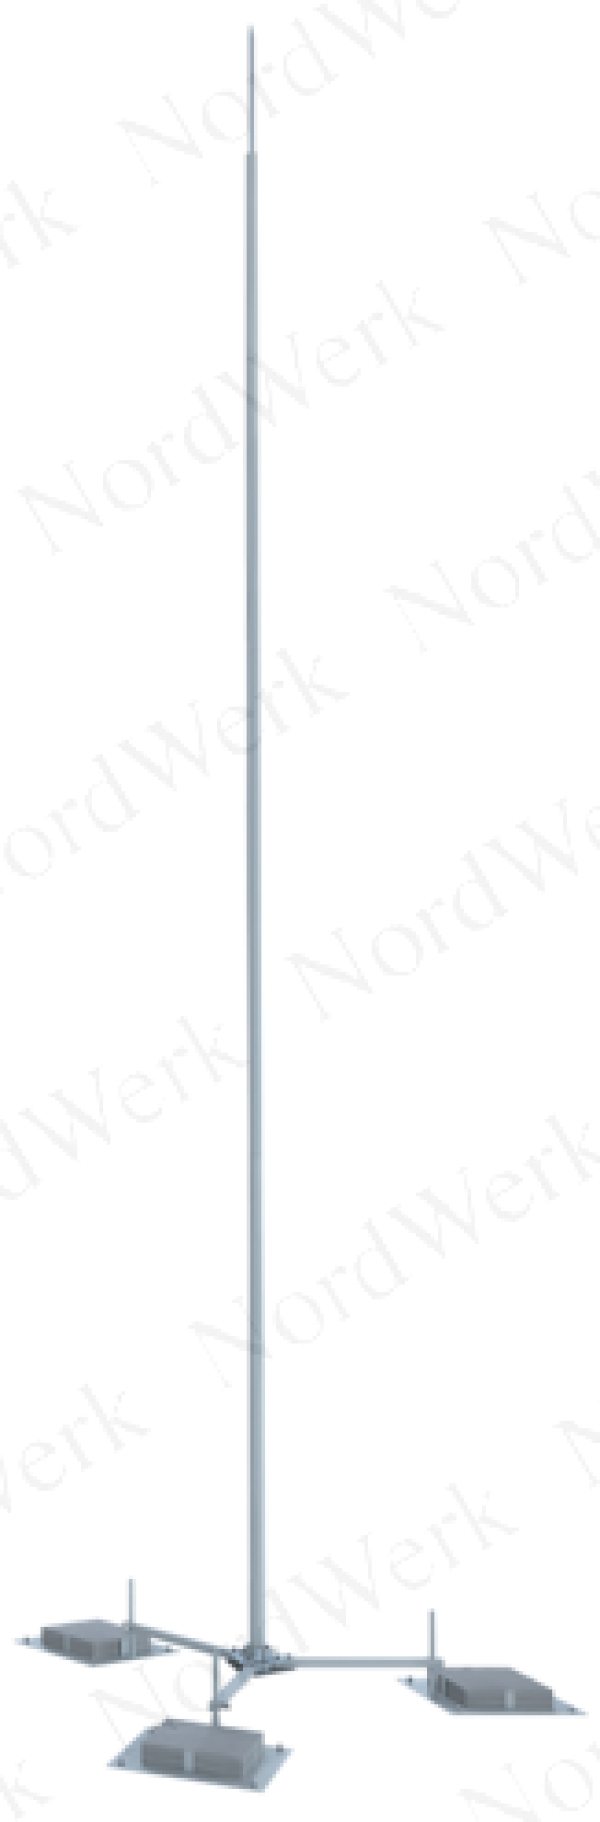 NordWerk МСАП-М-1,8-П – Молниеотвод высотой 1,8 метров (алюминий; с основанием под плитку)